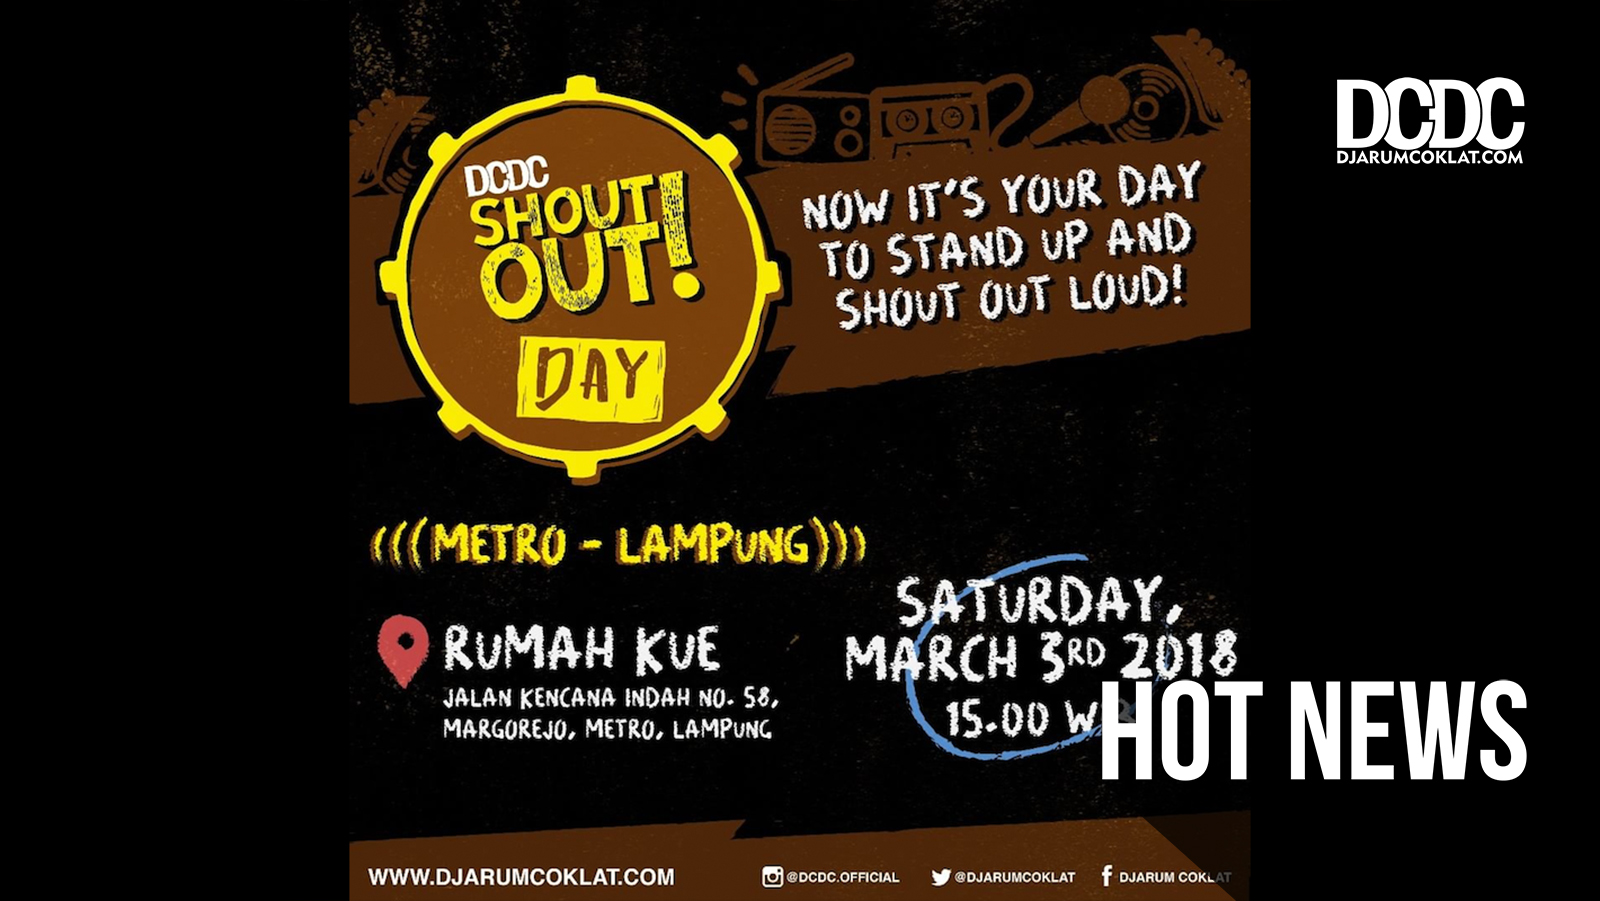 Hadir dan Ramaikan, DCDC ShoutOut! Day, Metro, Lampung!